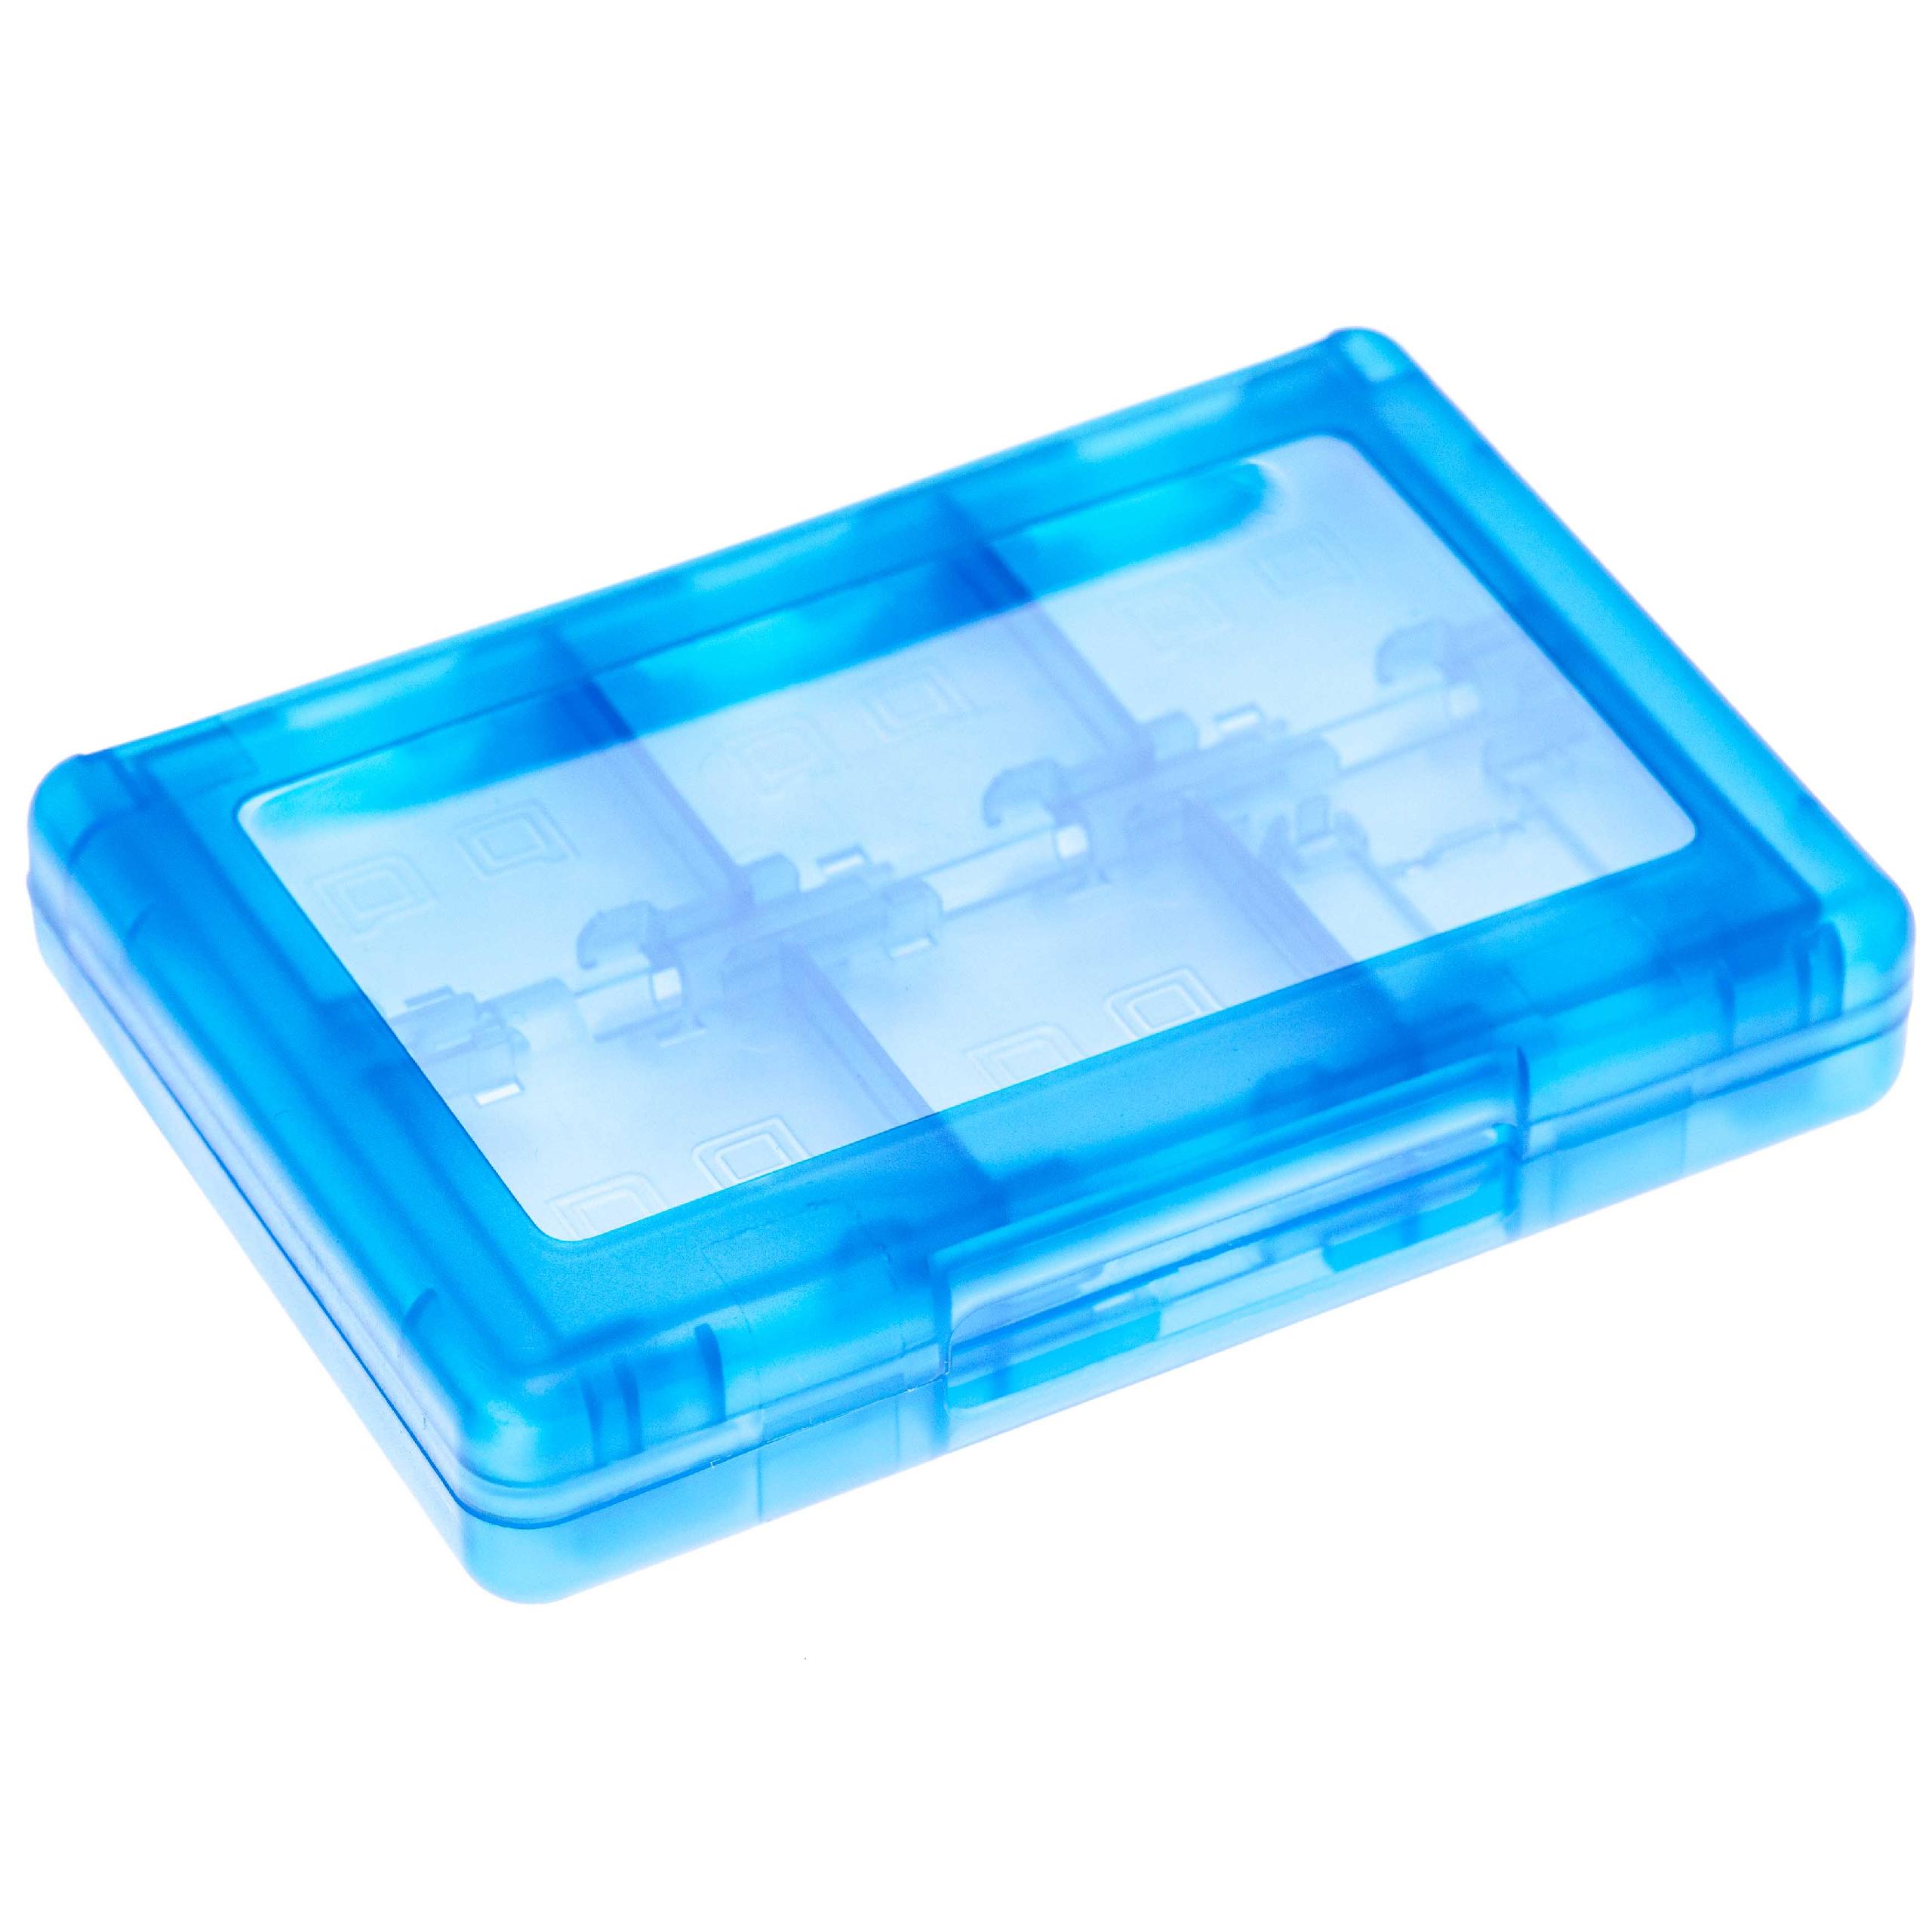 Estuche para juegos de consola y tarjetas de memoria para Nintendo 3DS etc. - plástico, transparente / azul